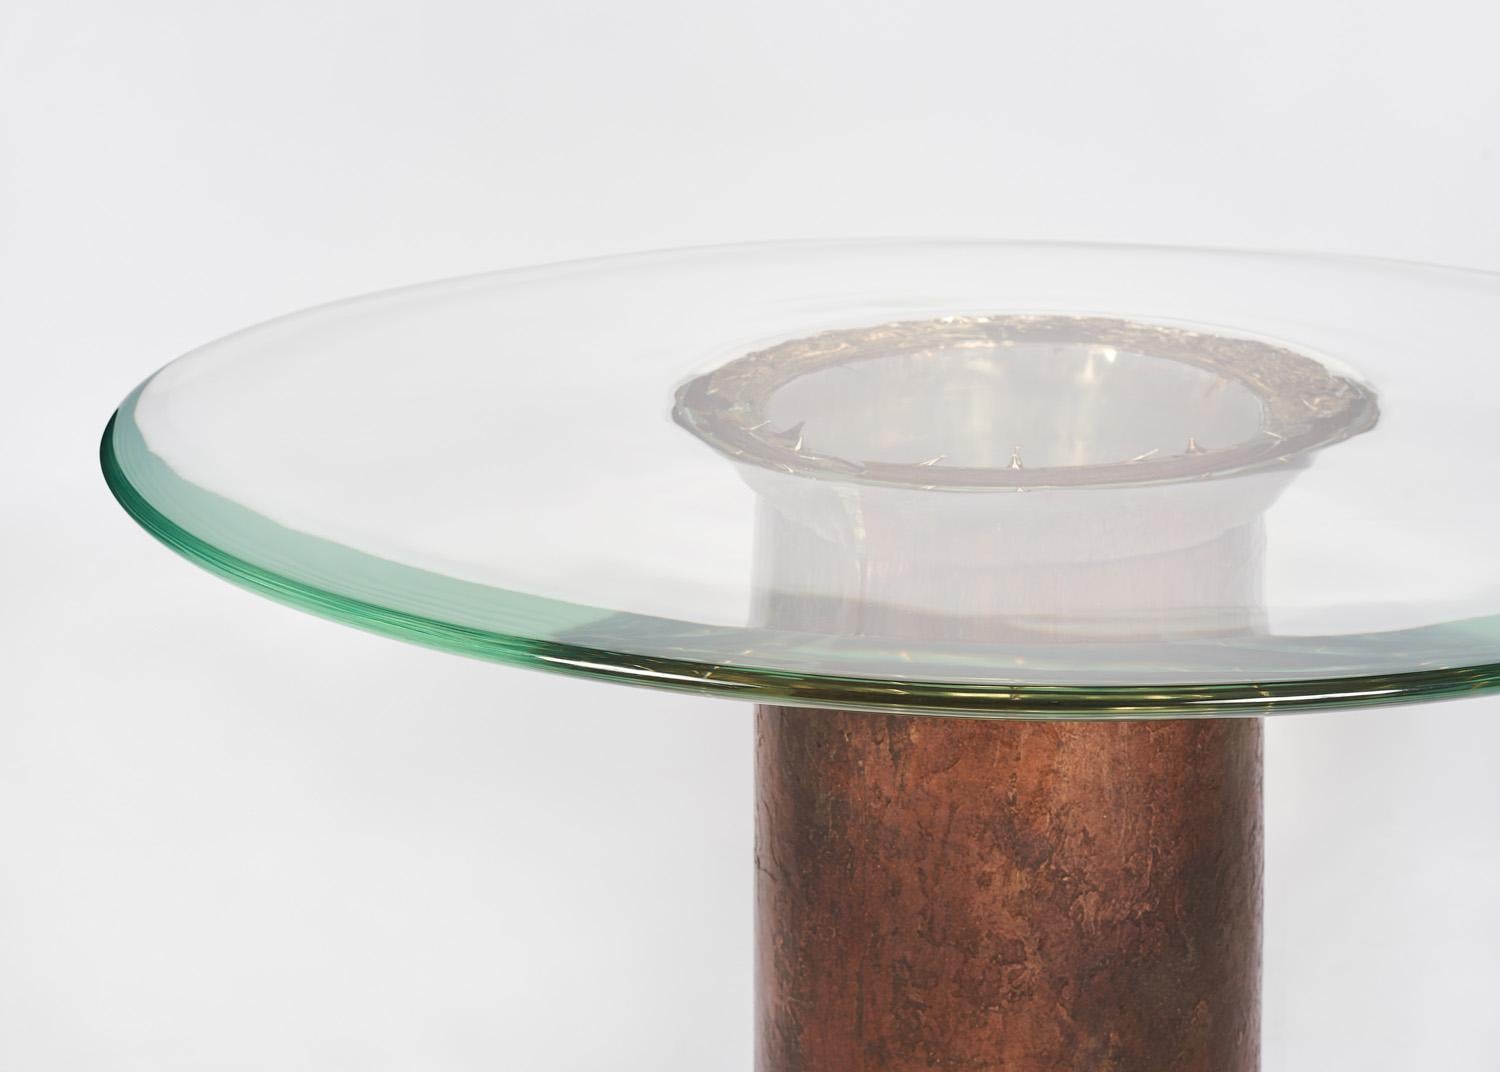 VORTEX ist eine sich ständig weiterentwickelnde Serie einzigartiger Tische in limitierter Auflage, die aus einer Kombination von Harz und Bronze hergestellt werden, zwei von der Natur als kontrastreich empfundenen Materialien. Indem das Strenge des